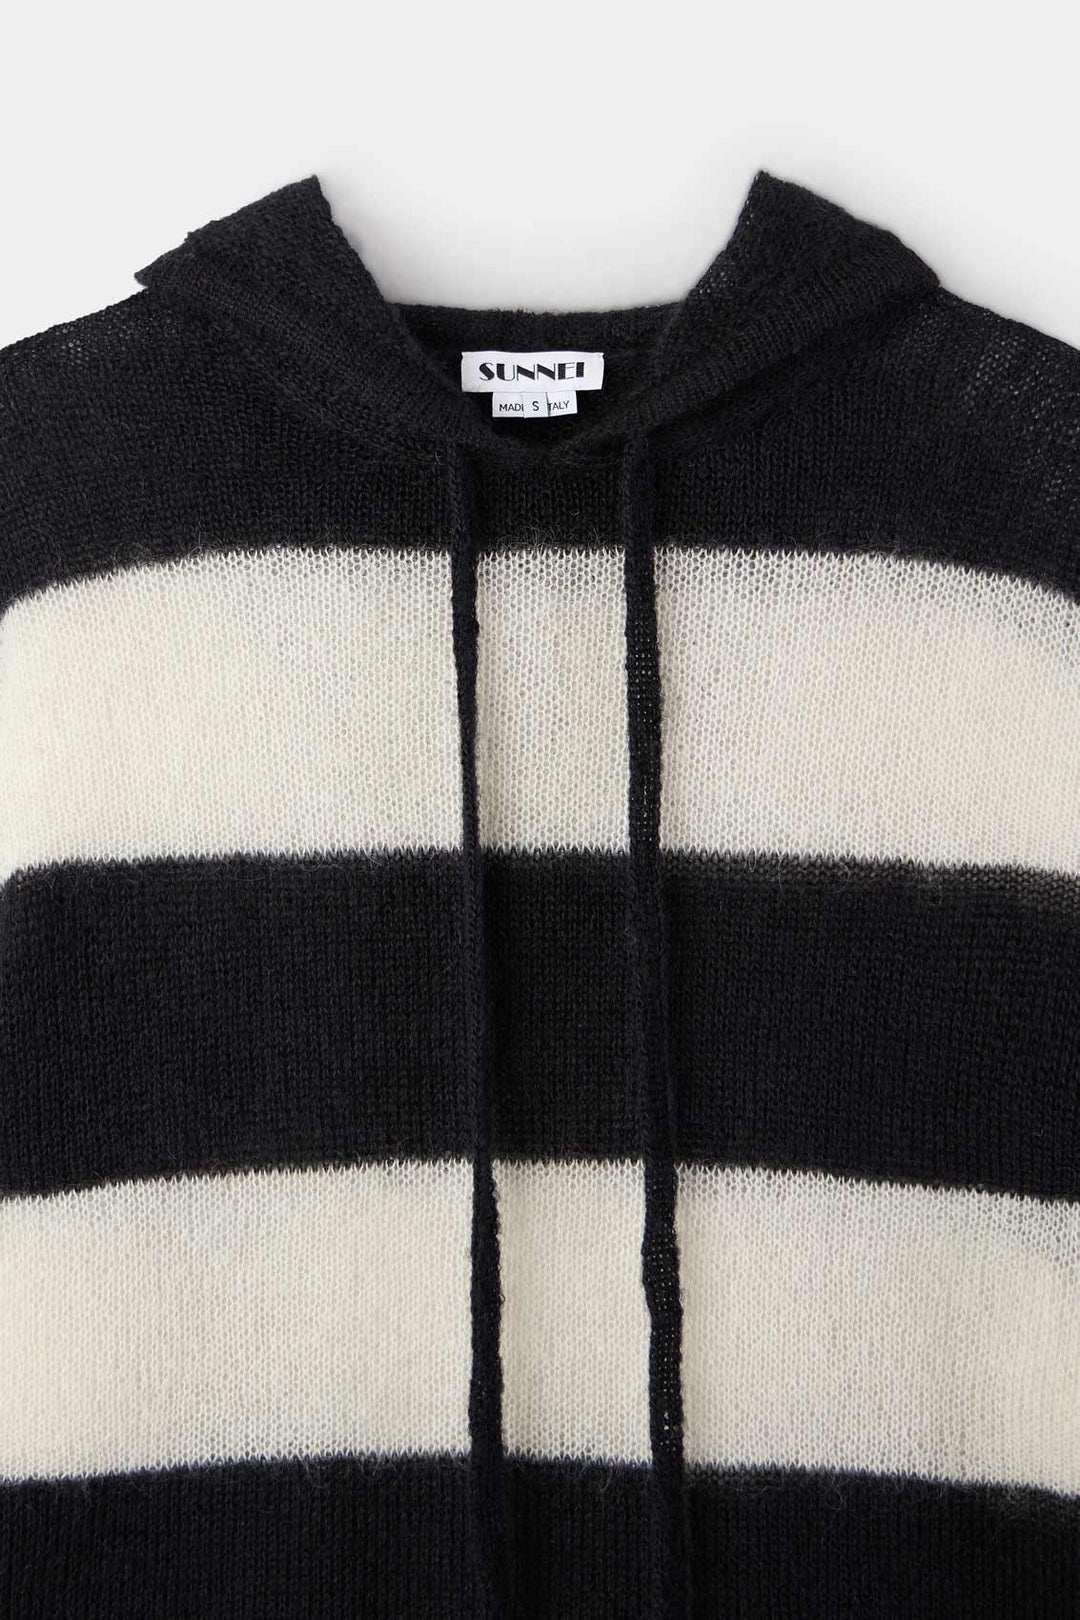 HOODIE / wool / cream & black stripes - 5